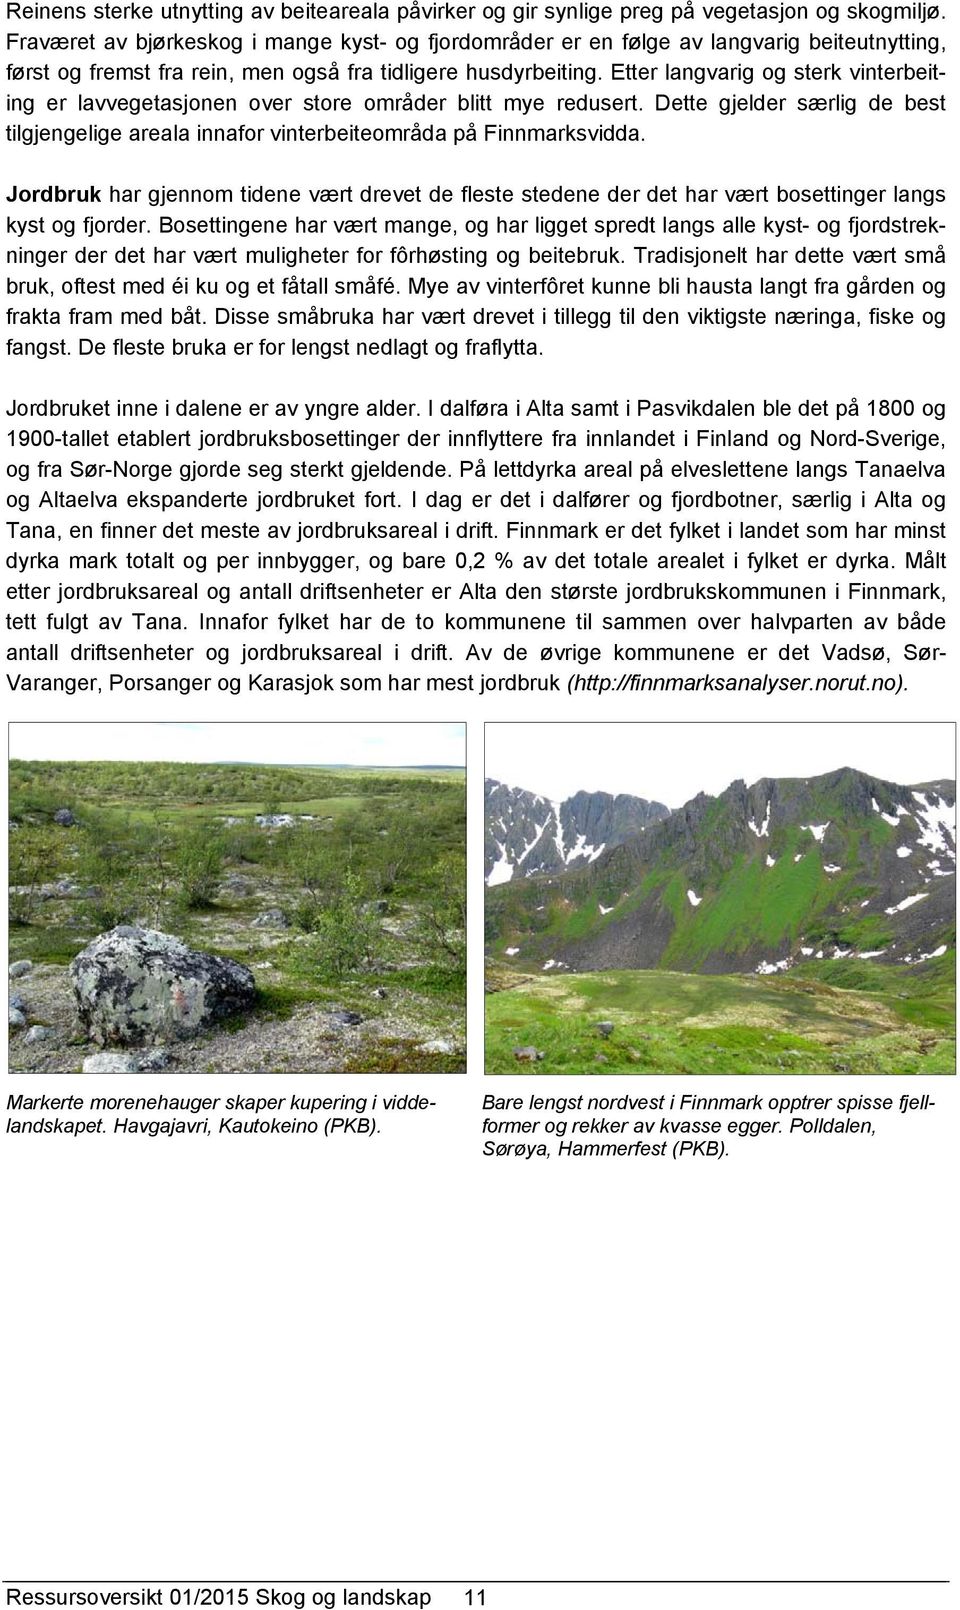 Etter langvarig og sterk vinterbeiting er lavvegetasjonen over store områder blitt mye redusert. Dette gjelder særlig de best tilgjengelige areala innafor vinterbeiteområda på Finnmarksvidda.